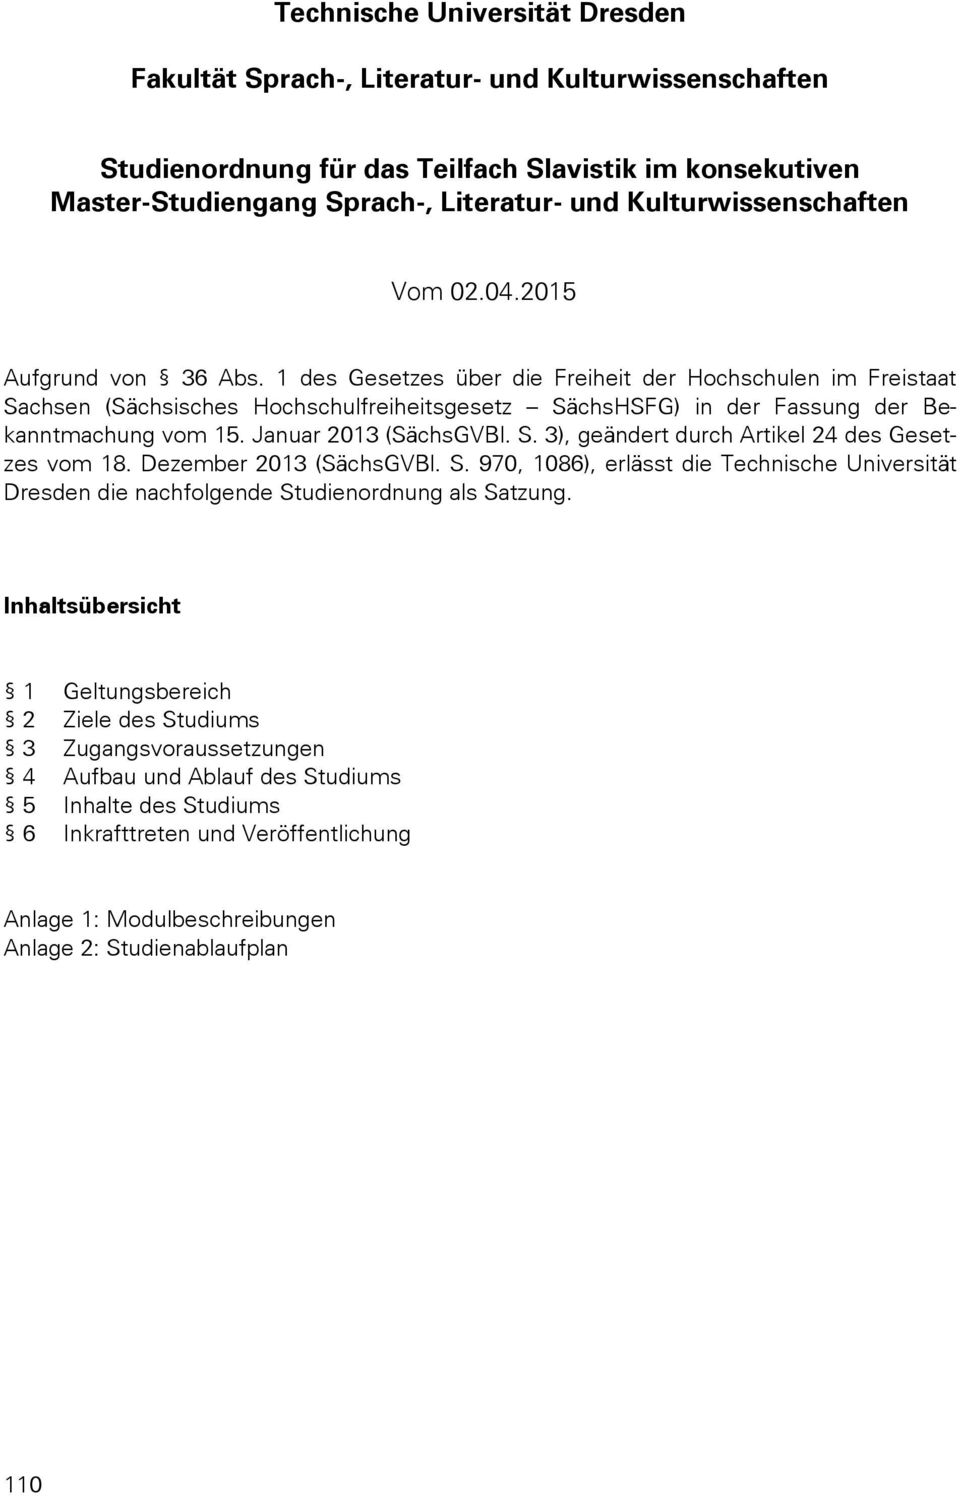 1 des Gesetzes über die Freiheit der Hochschulen im Freistaat Sachsen (Sächsisches Hochschulfreiheitsgesetz SächsHSFG) in der Fassung der Bekanntmachung vom 15. Januar 2013 (SächsGVBl. S. 3), geändert durch Artikel 24 des Gesetzes vom 18.